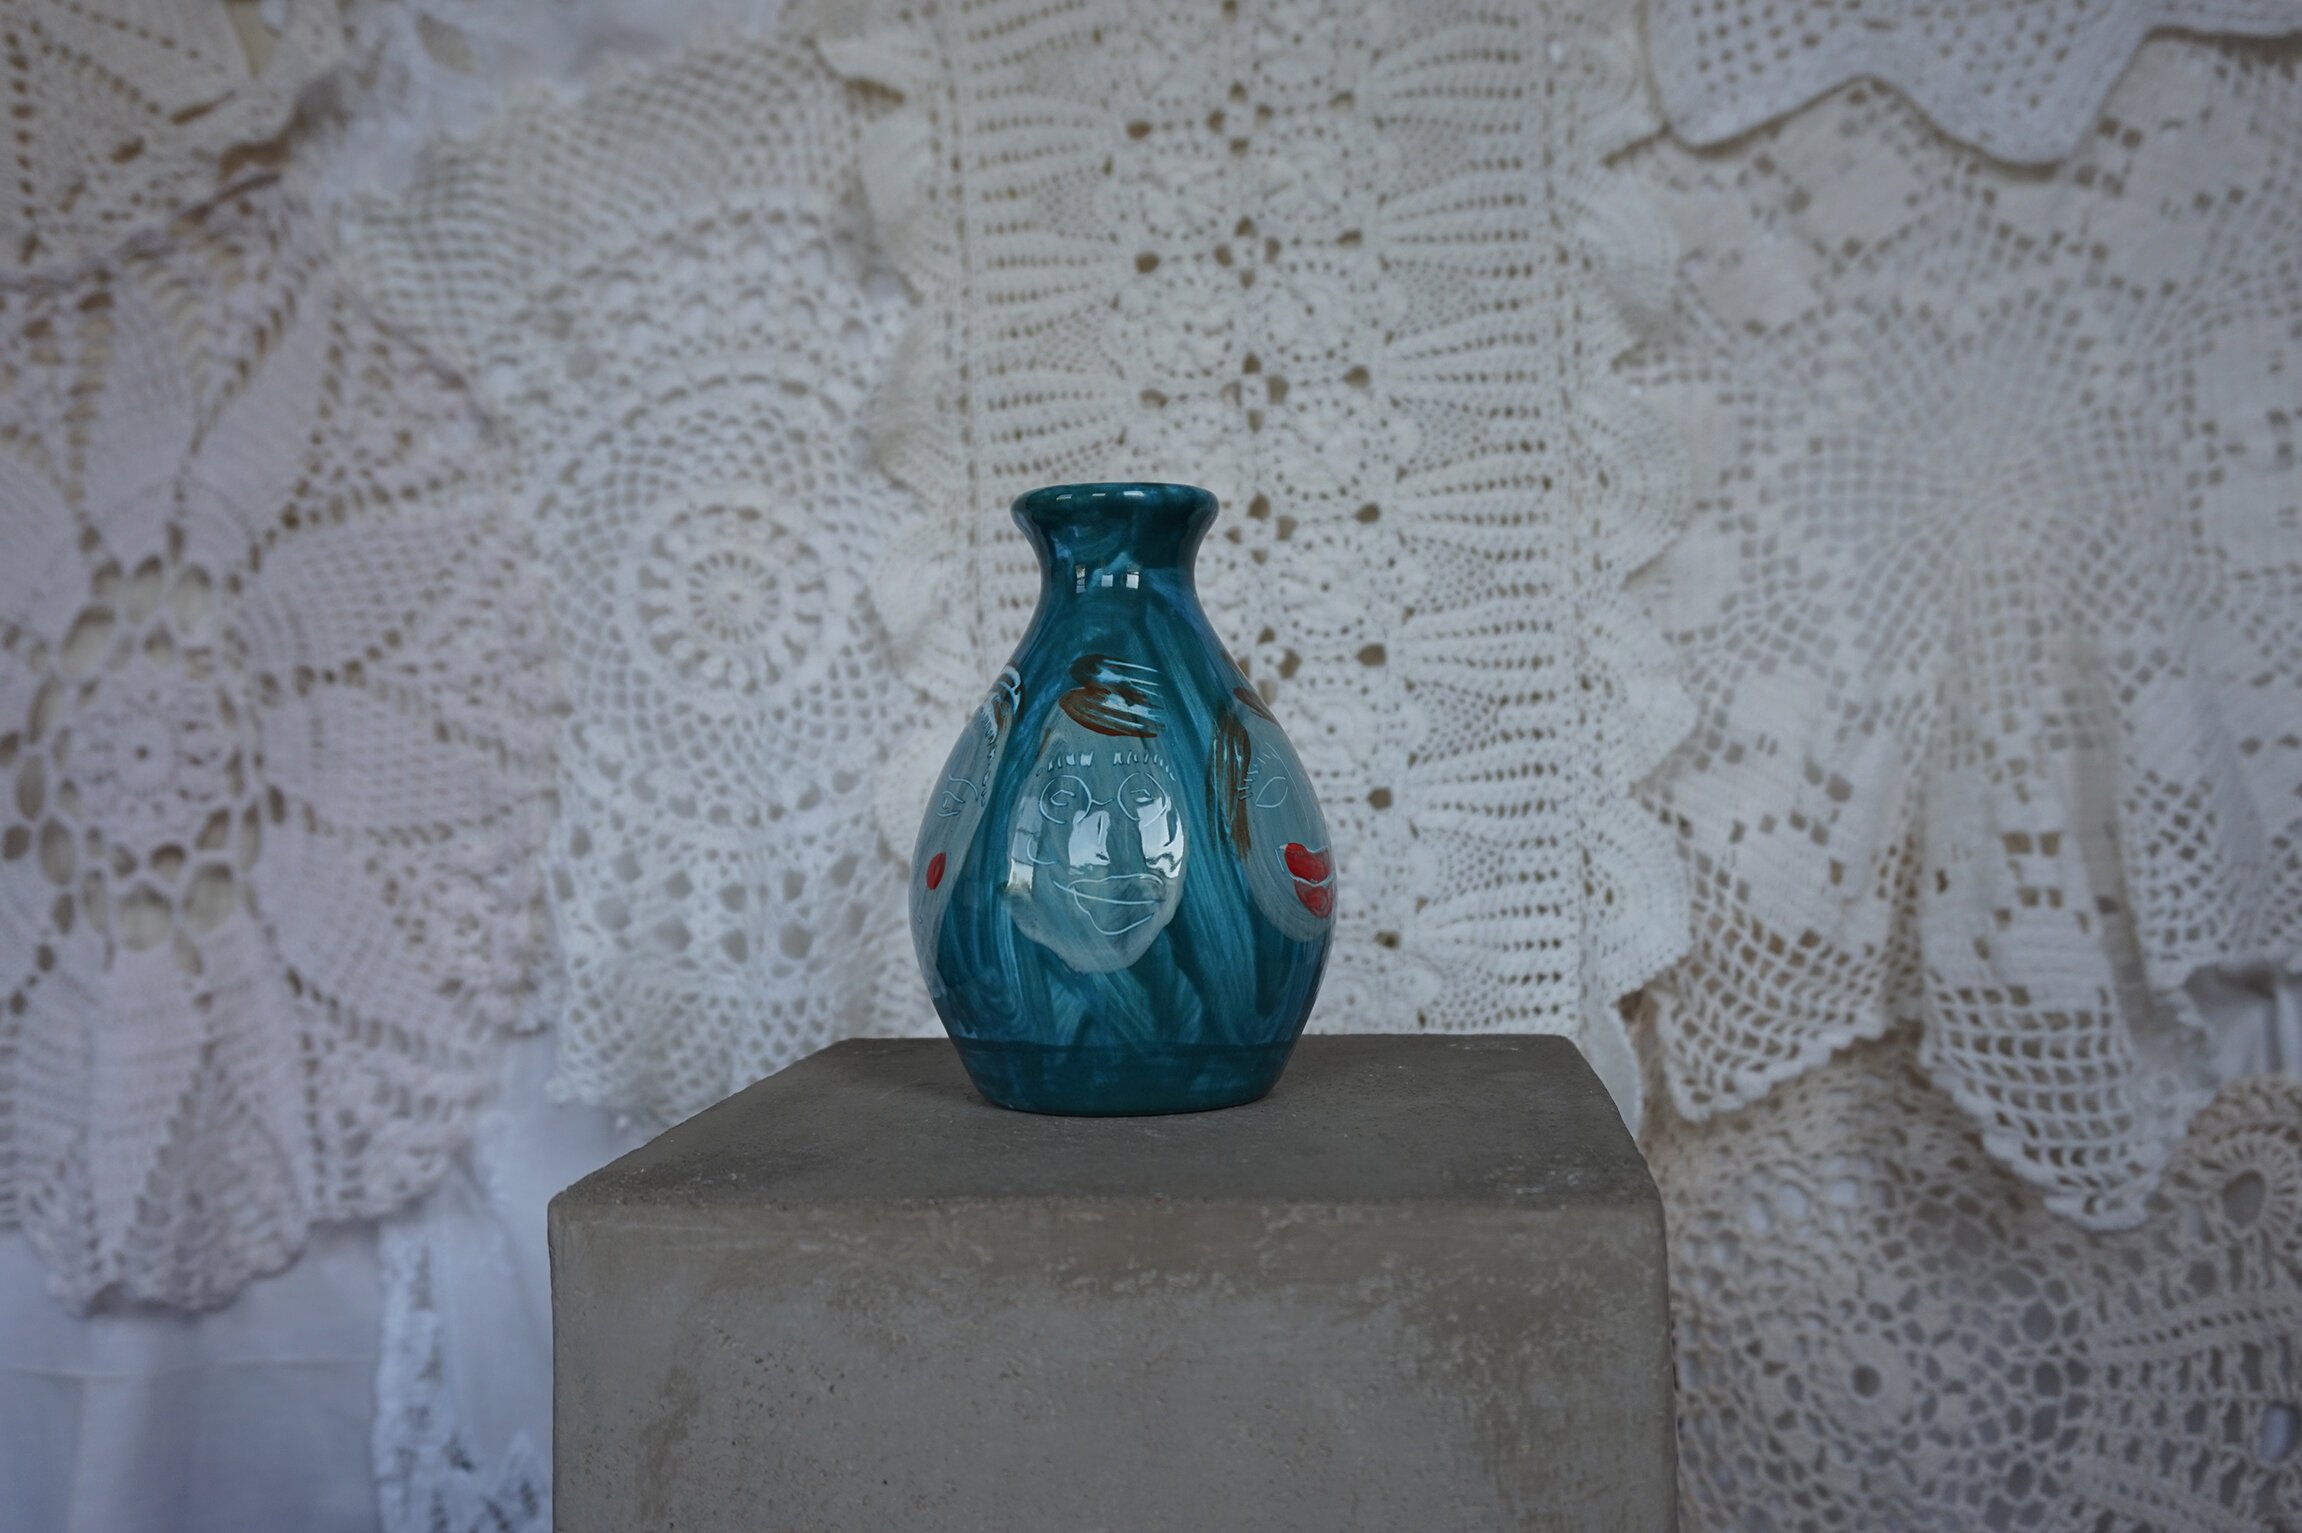   Vase, 2021   Porcelain  5.5 x 1.5 in 